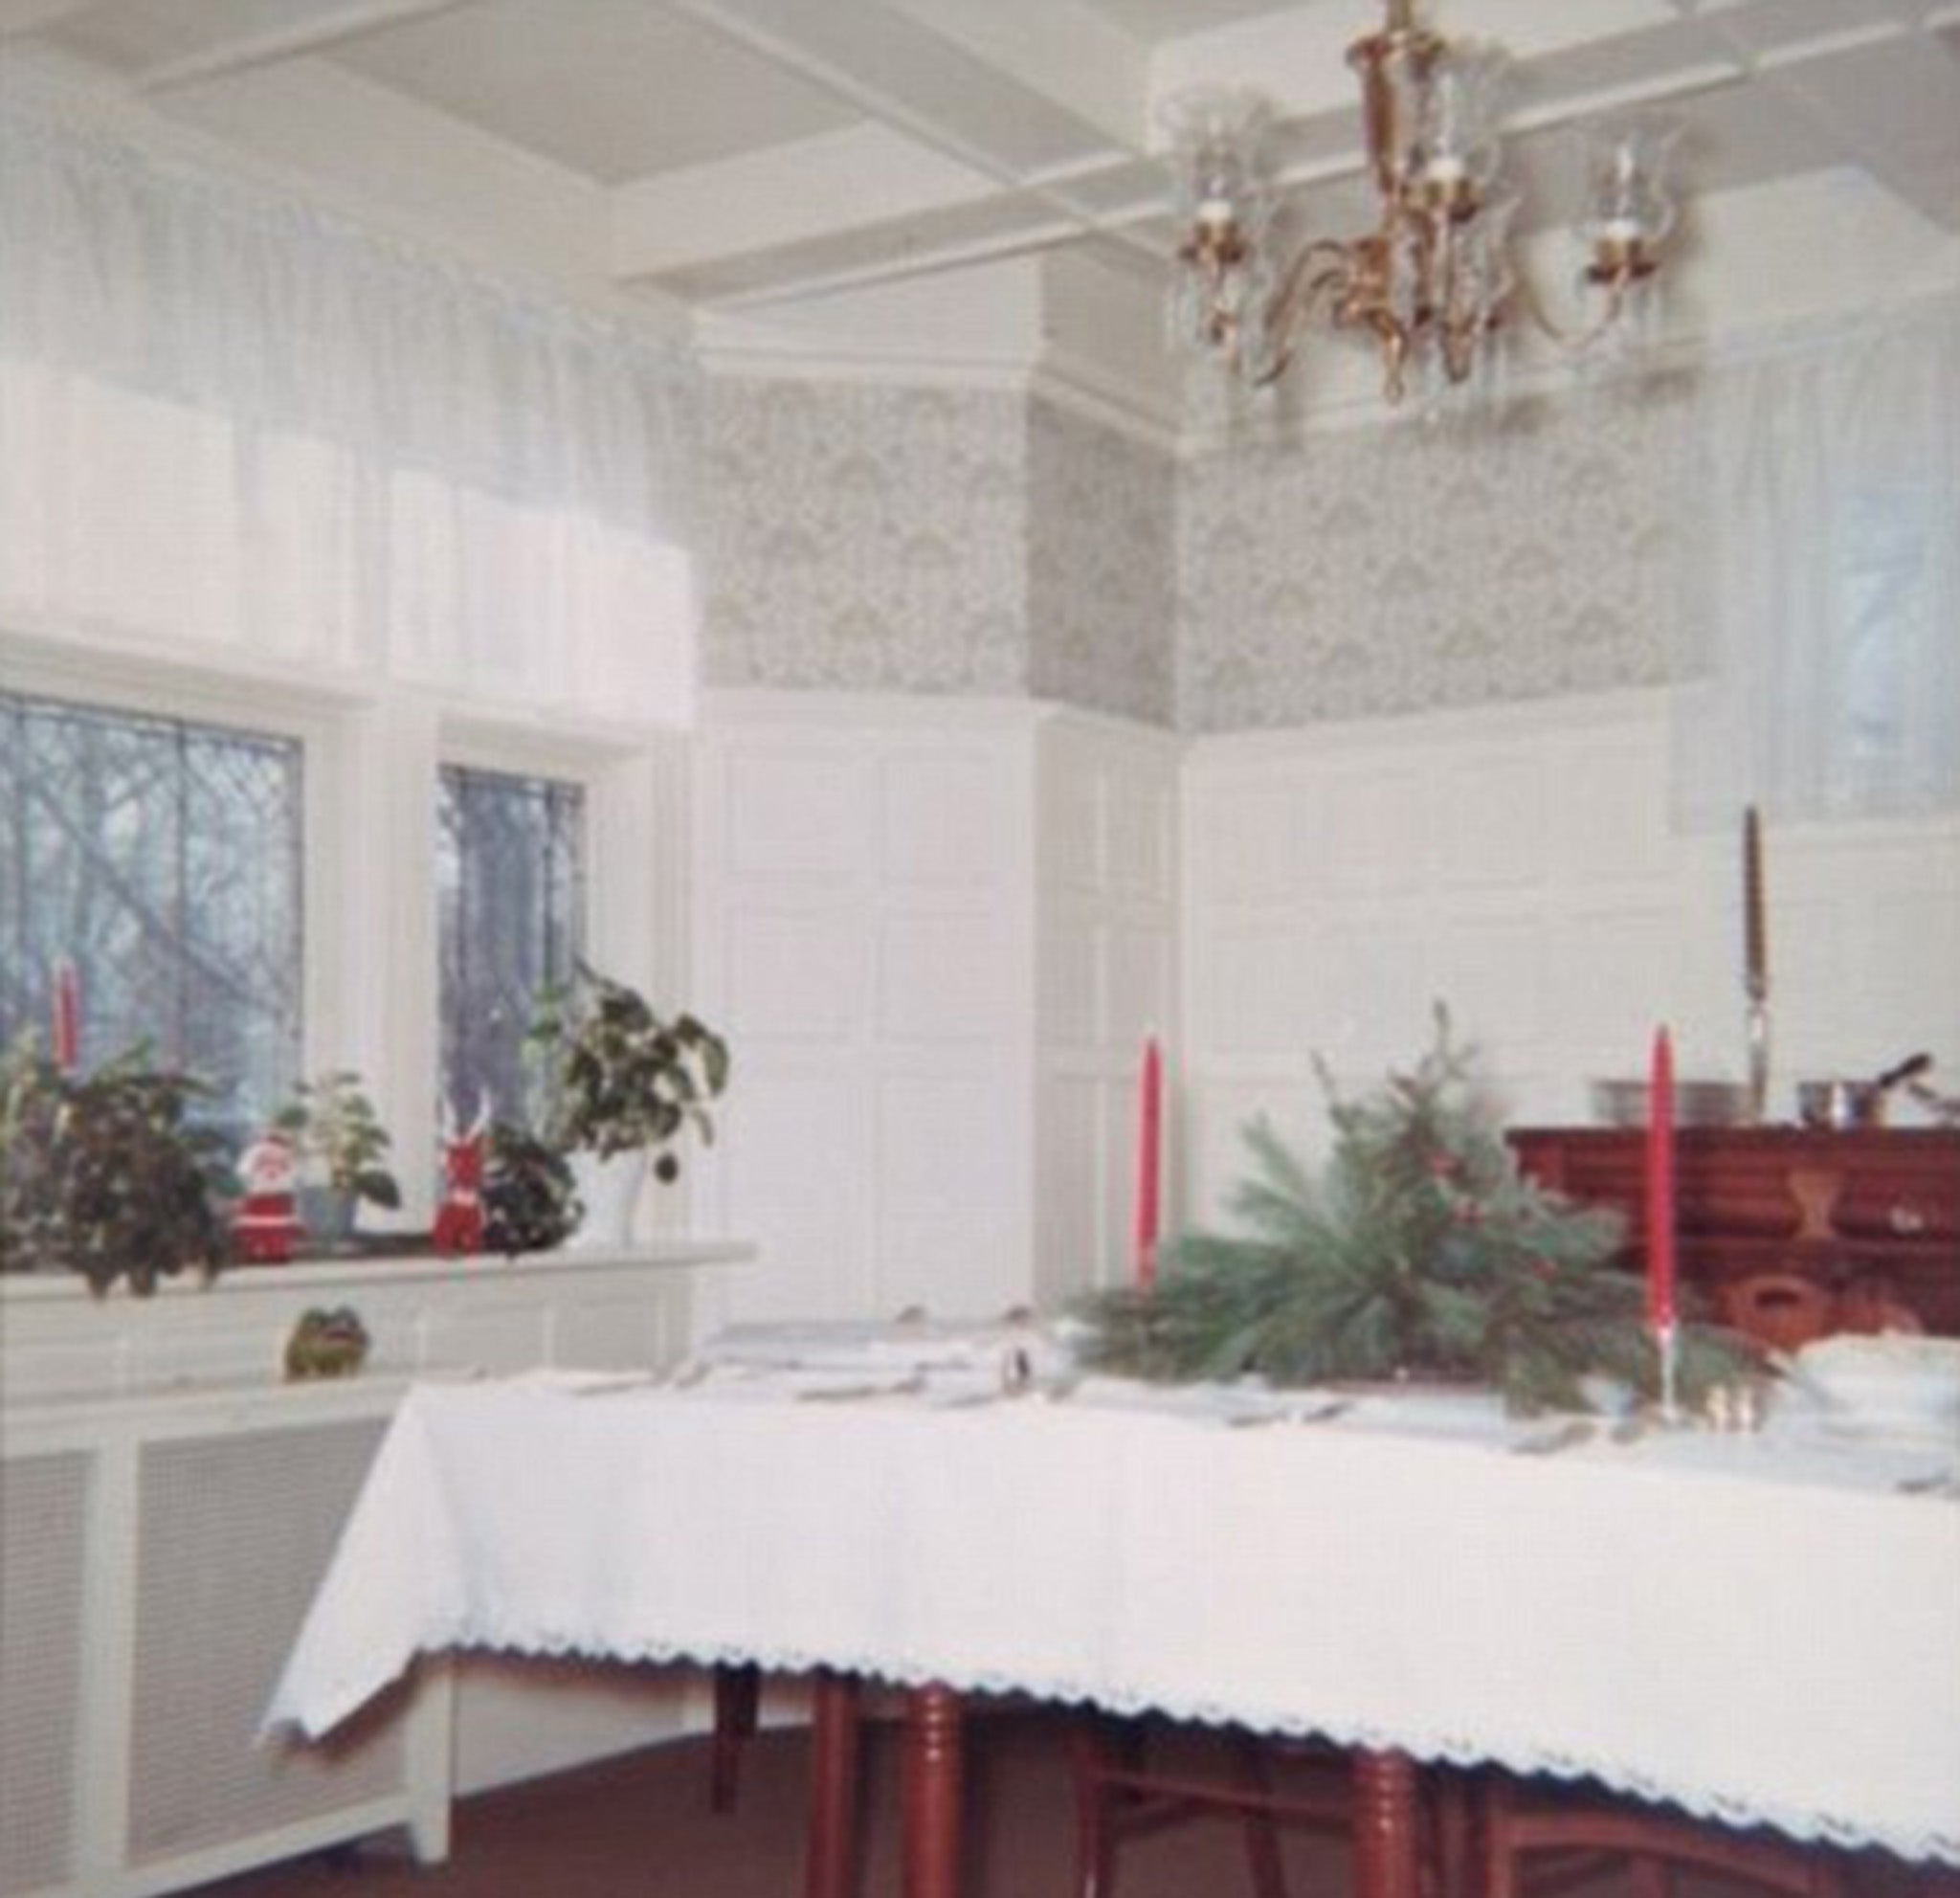 El interior de la casa tal y como se veía con su anterior propietario, años antes de que la familia Broaddus se mudara